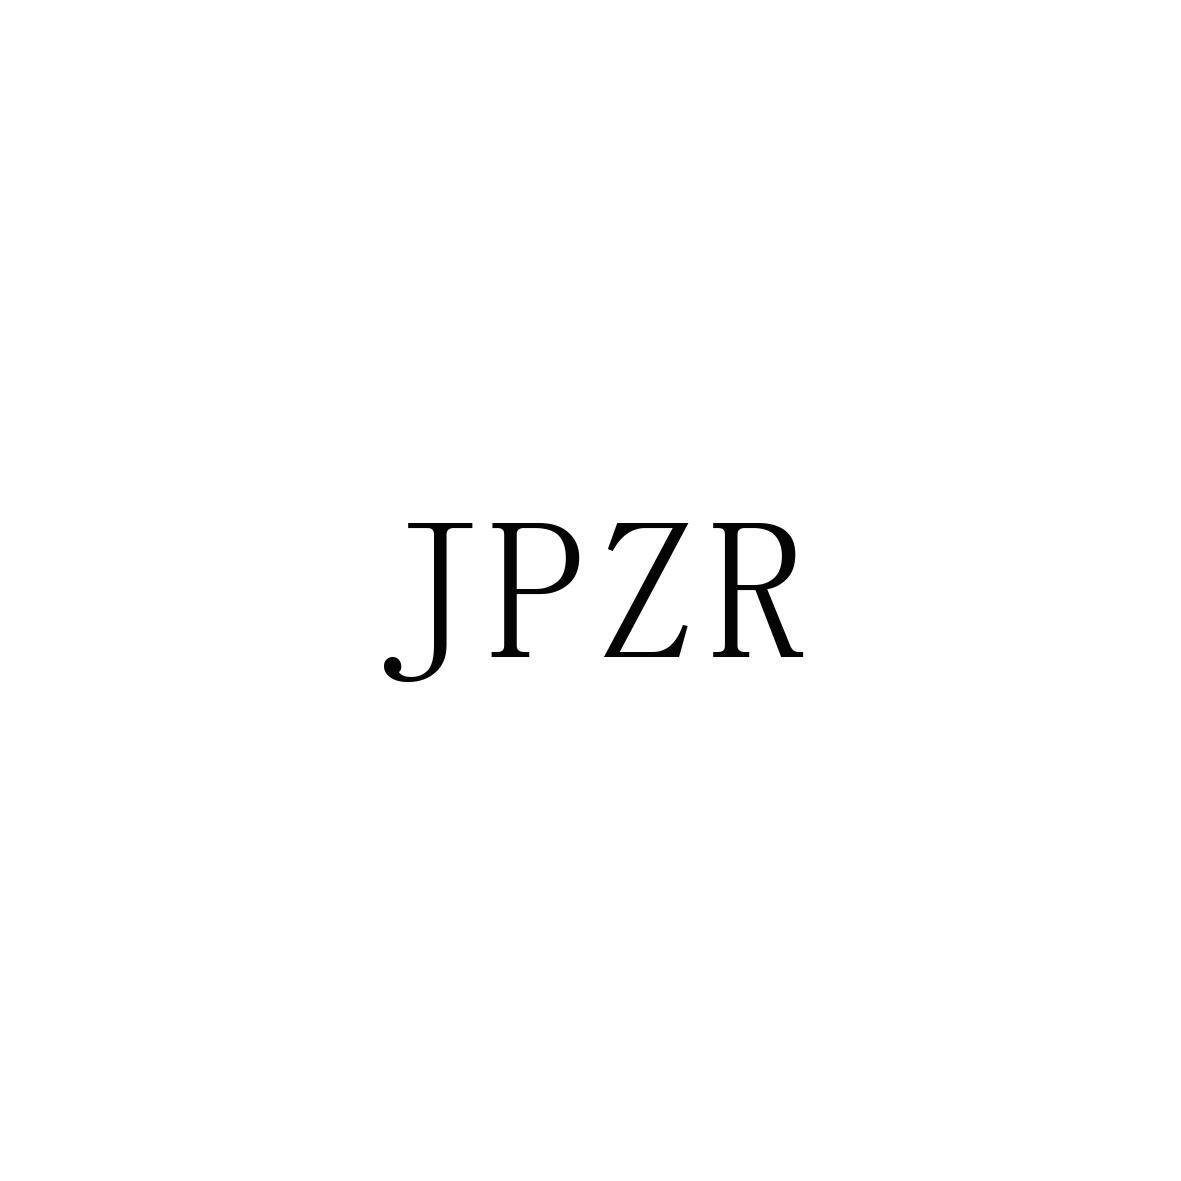 JPZR